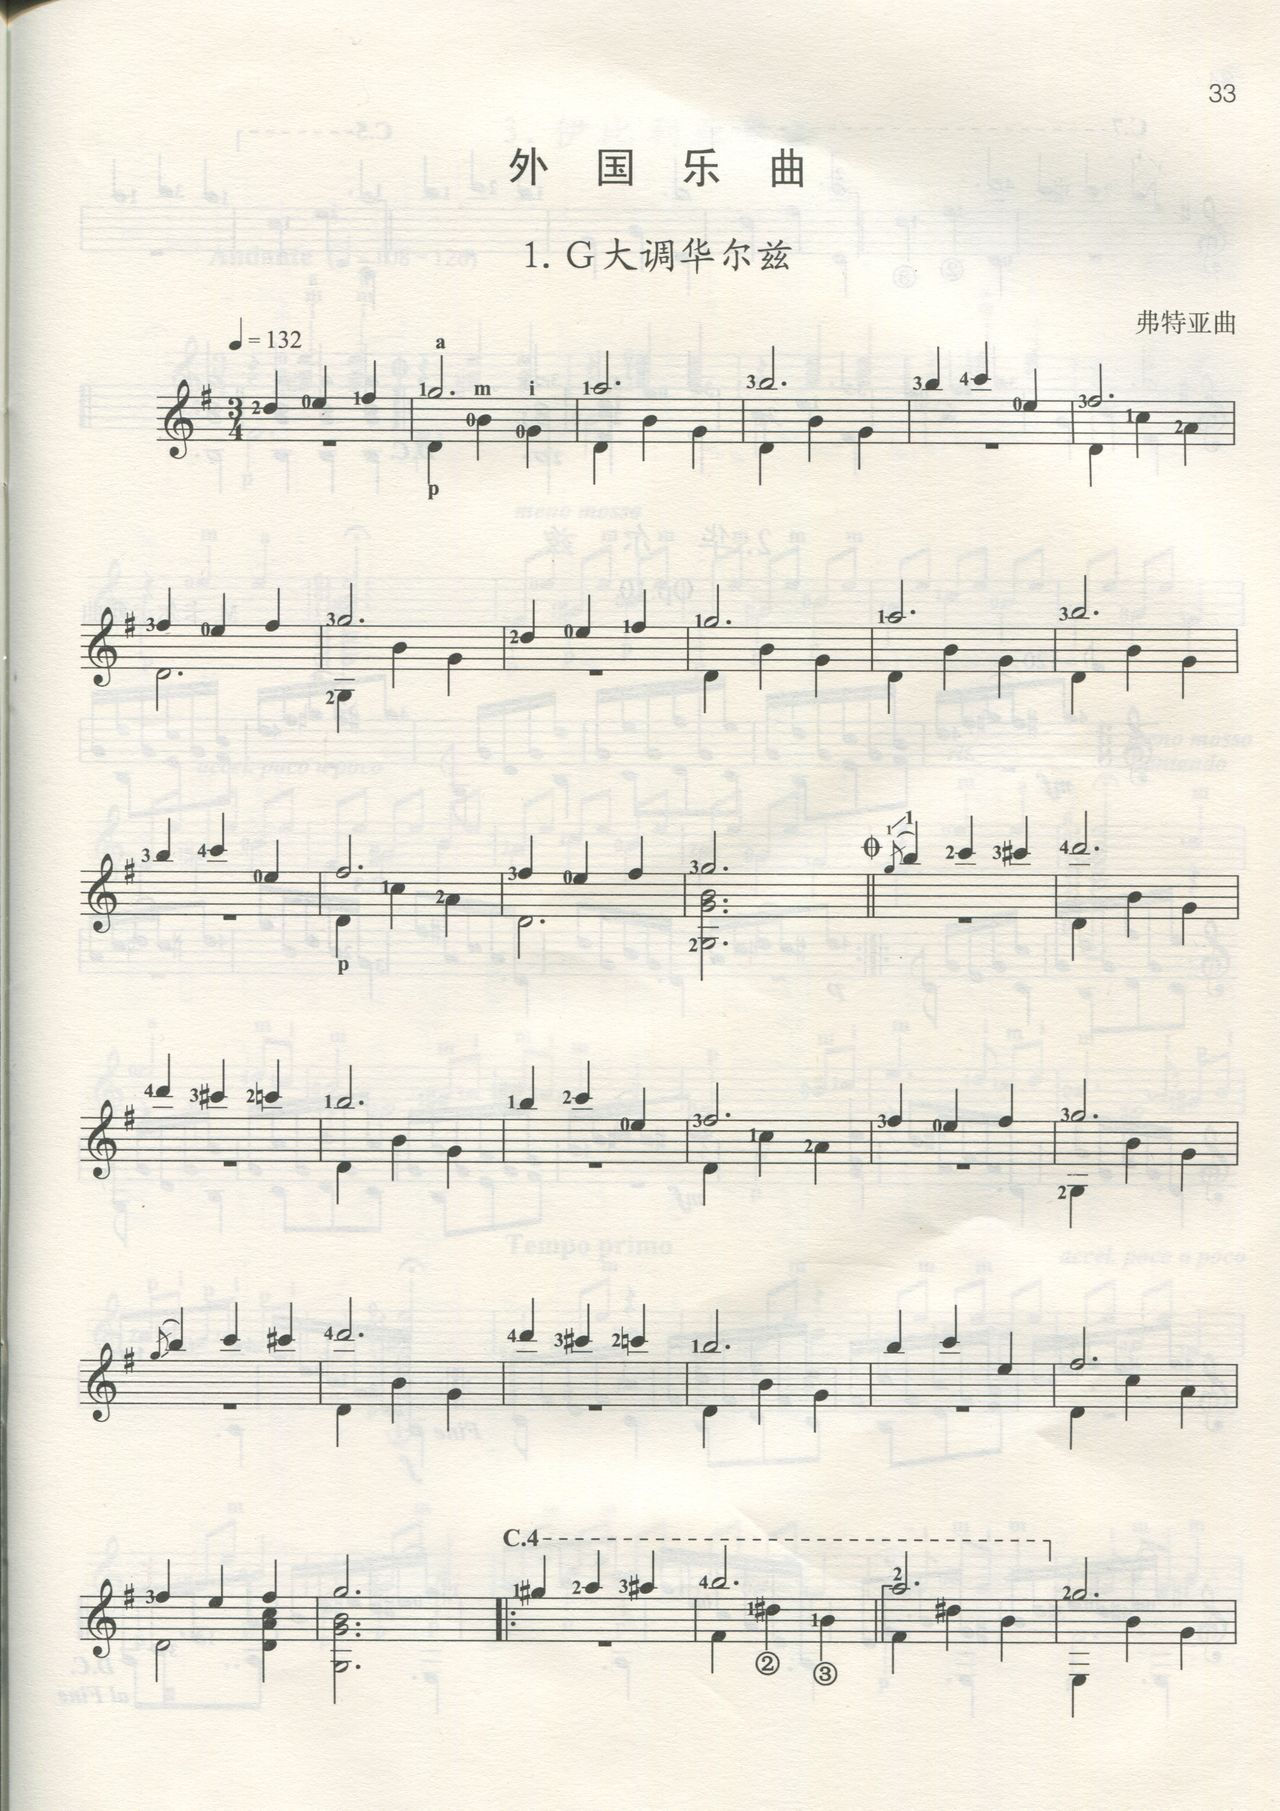 [中国音乐家协会]古典吉他考级作品集第一级-第四级 44